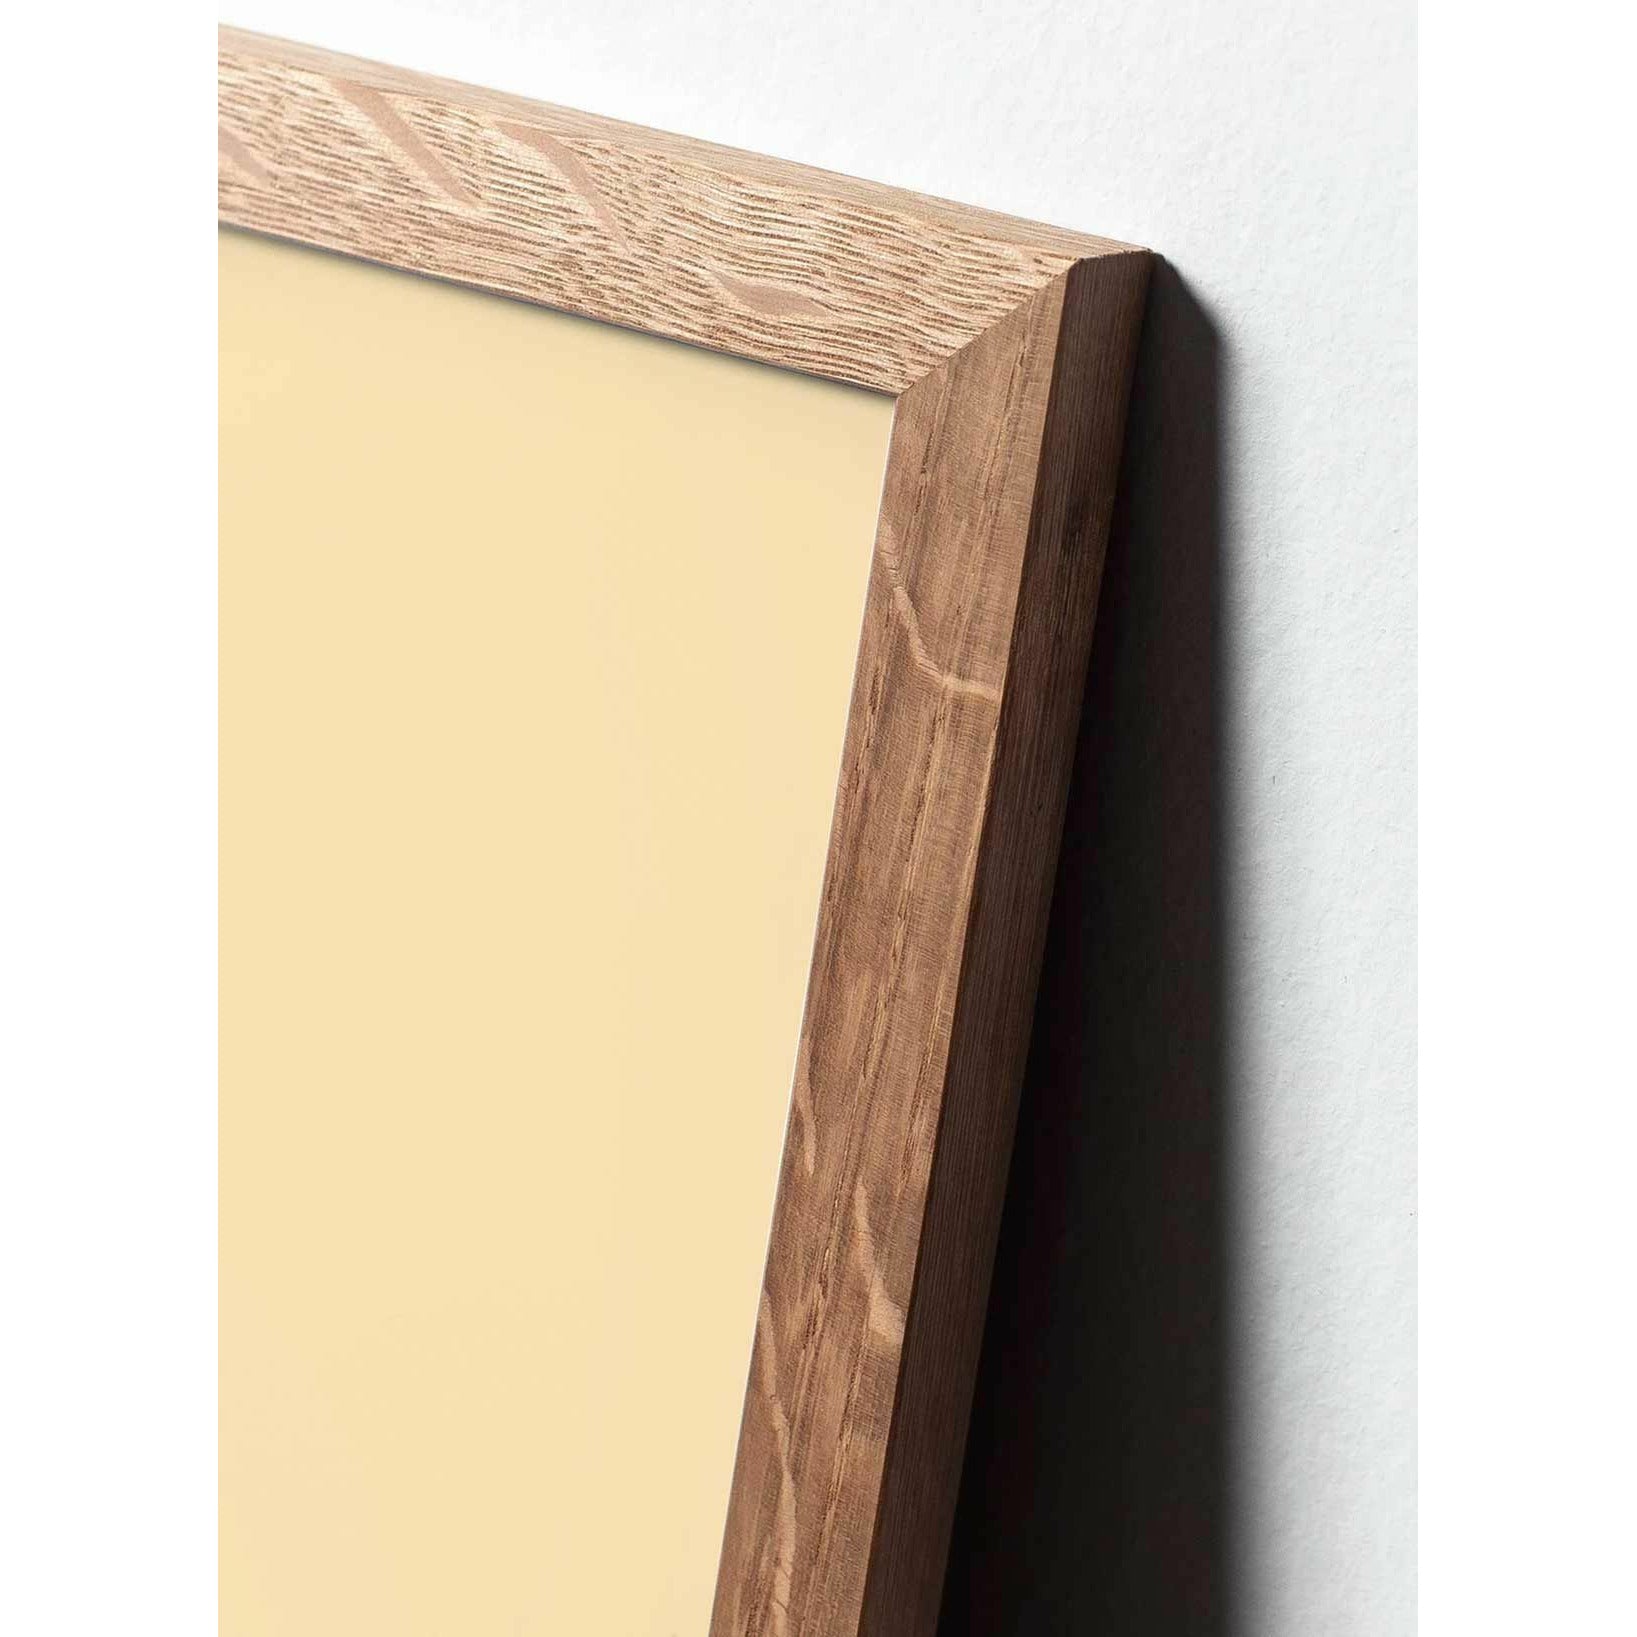 Póster clásico de cono de pino de creación, marco hecho de madera clara A5, fondo blanco